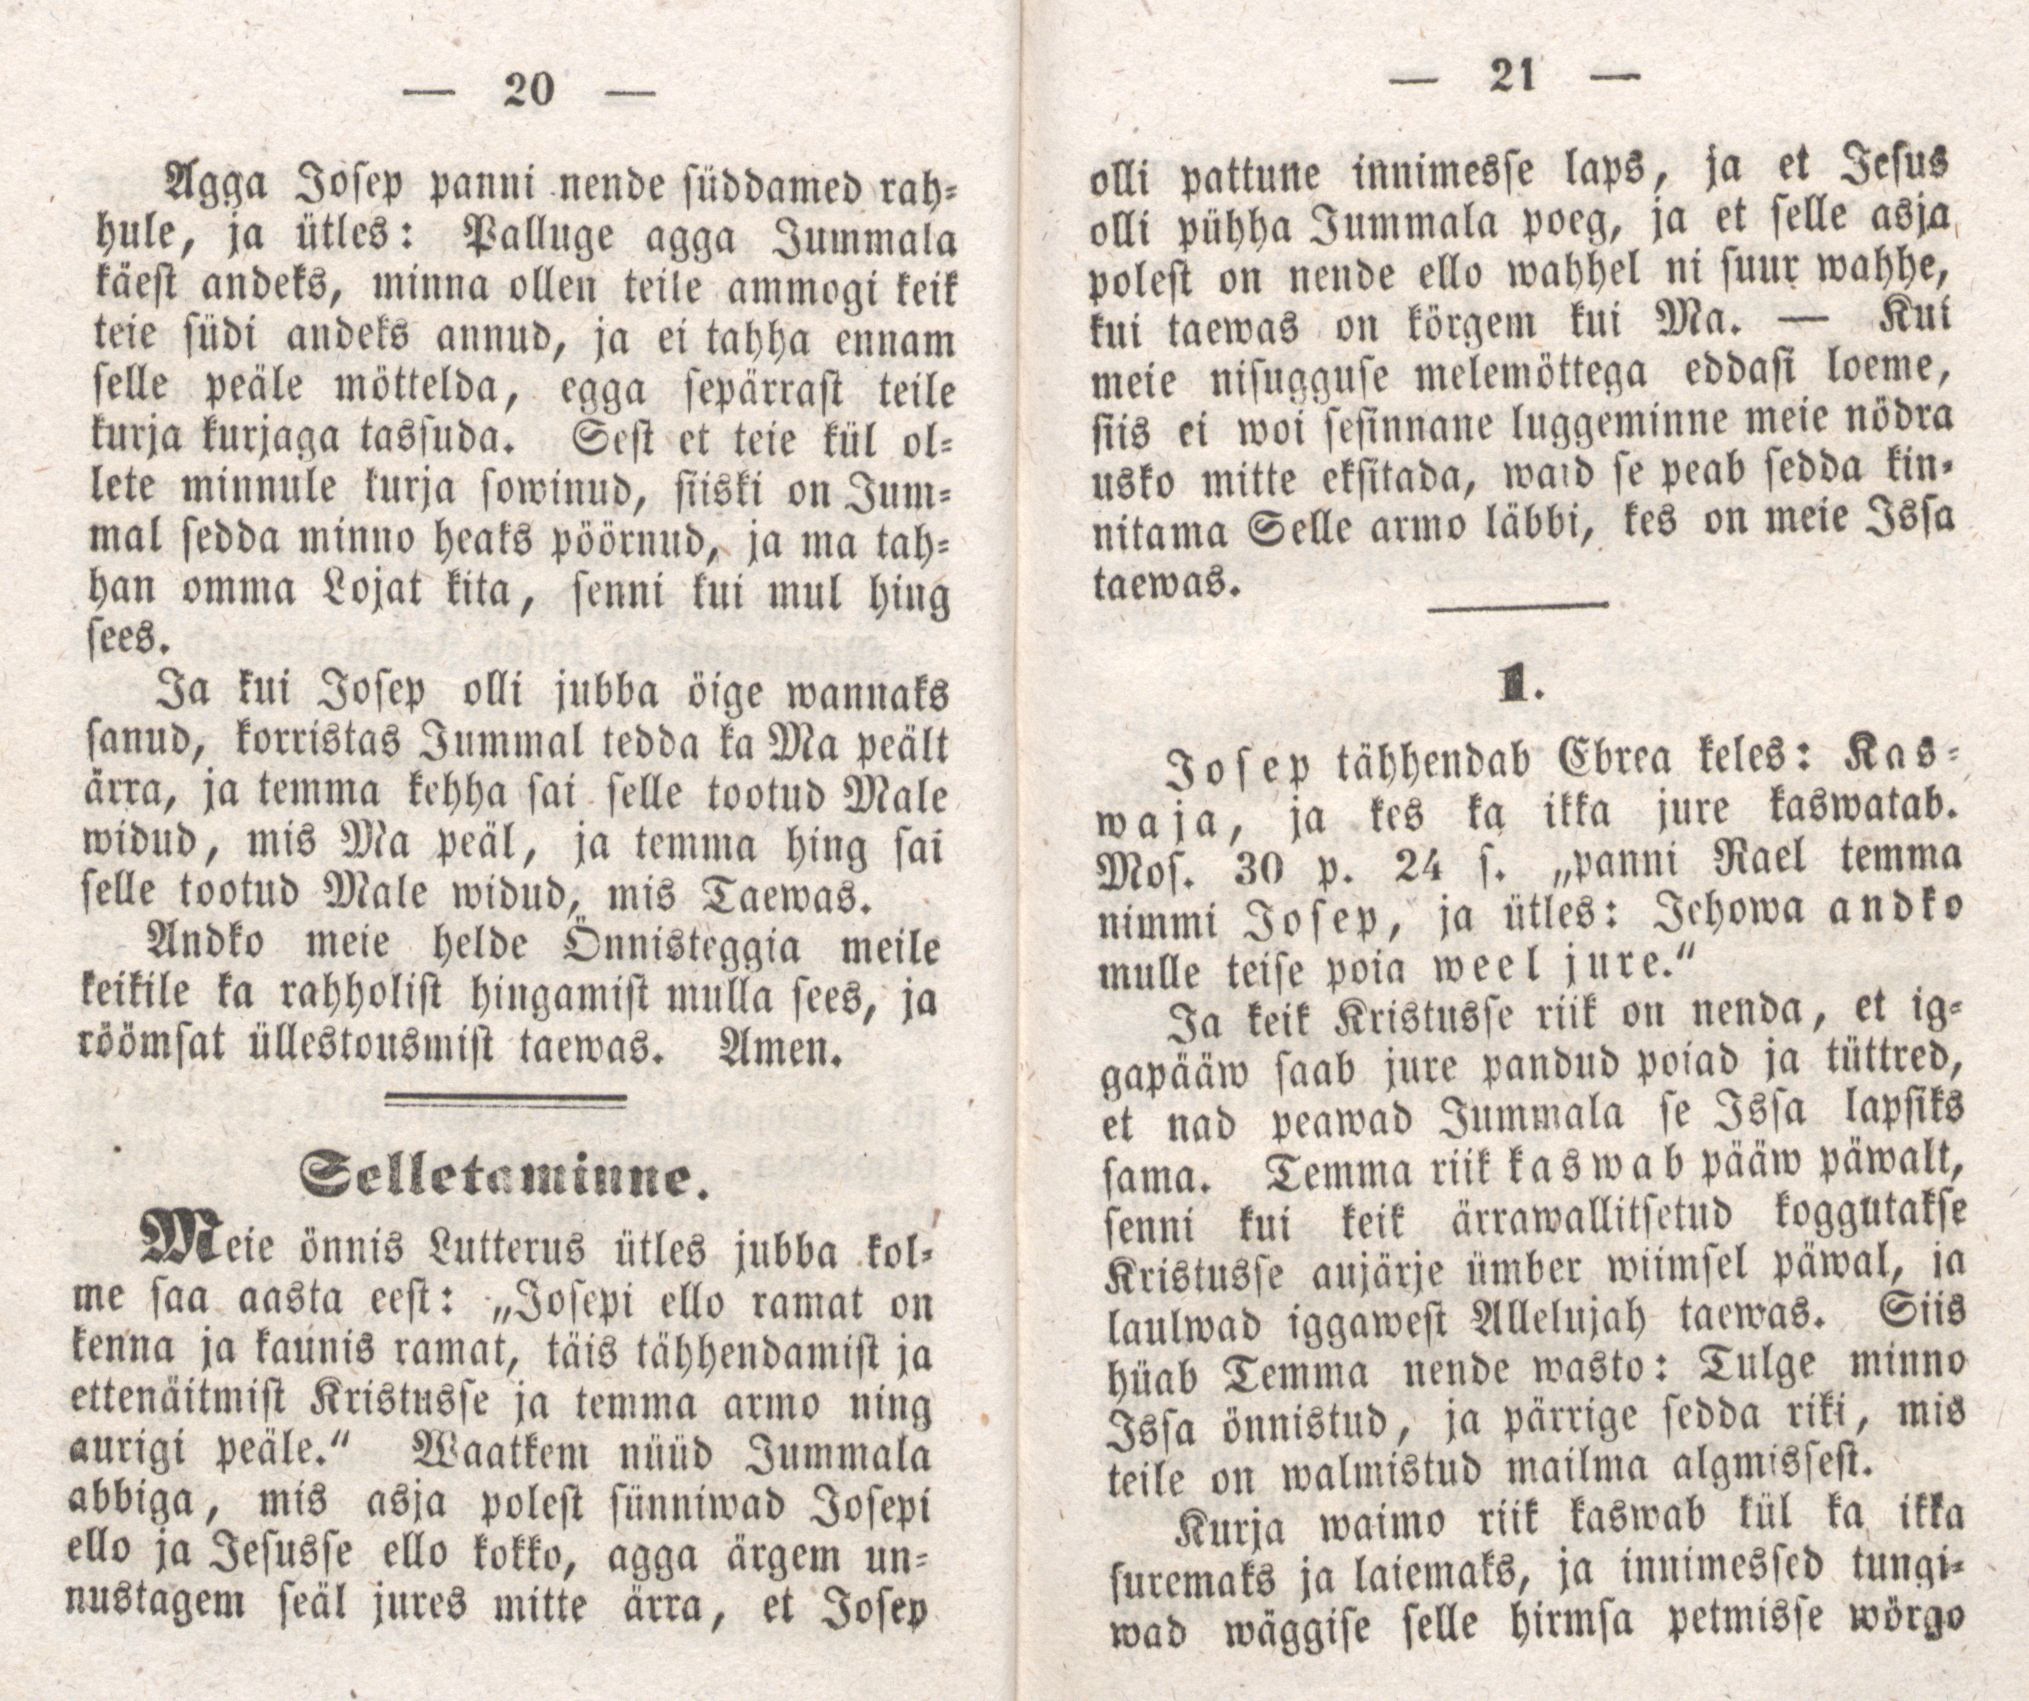 Josepi elloramat (1850) | 13. (20-21) Main body of text